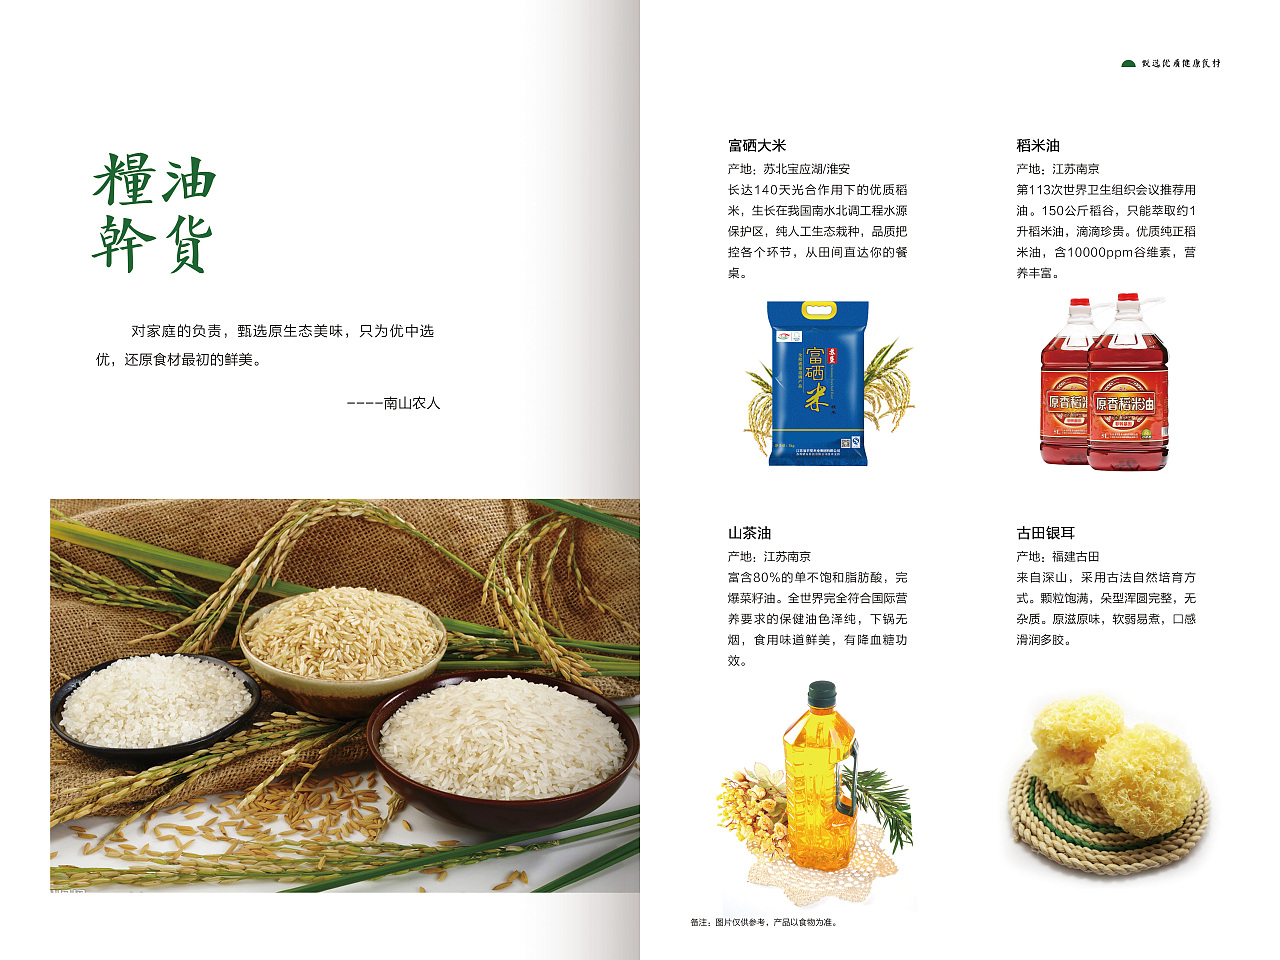 南京食品企业宣传册制作,企业形象食品画册设计定制